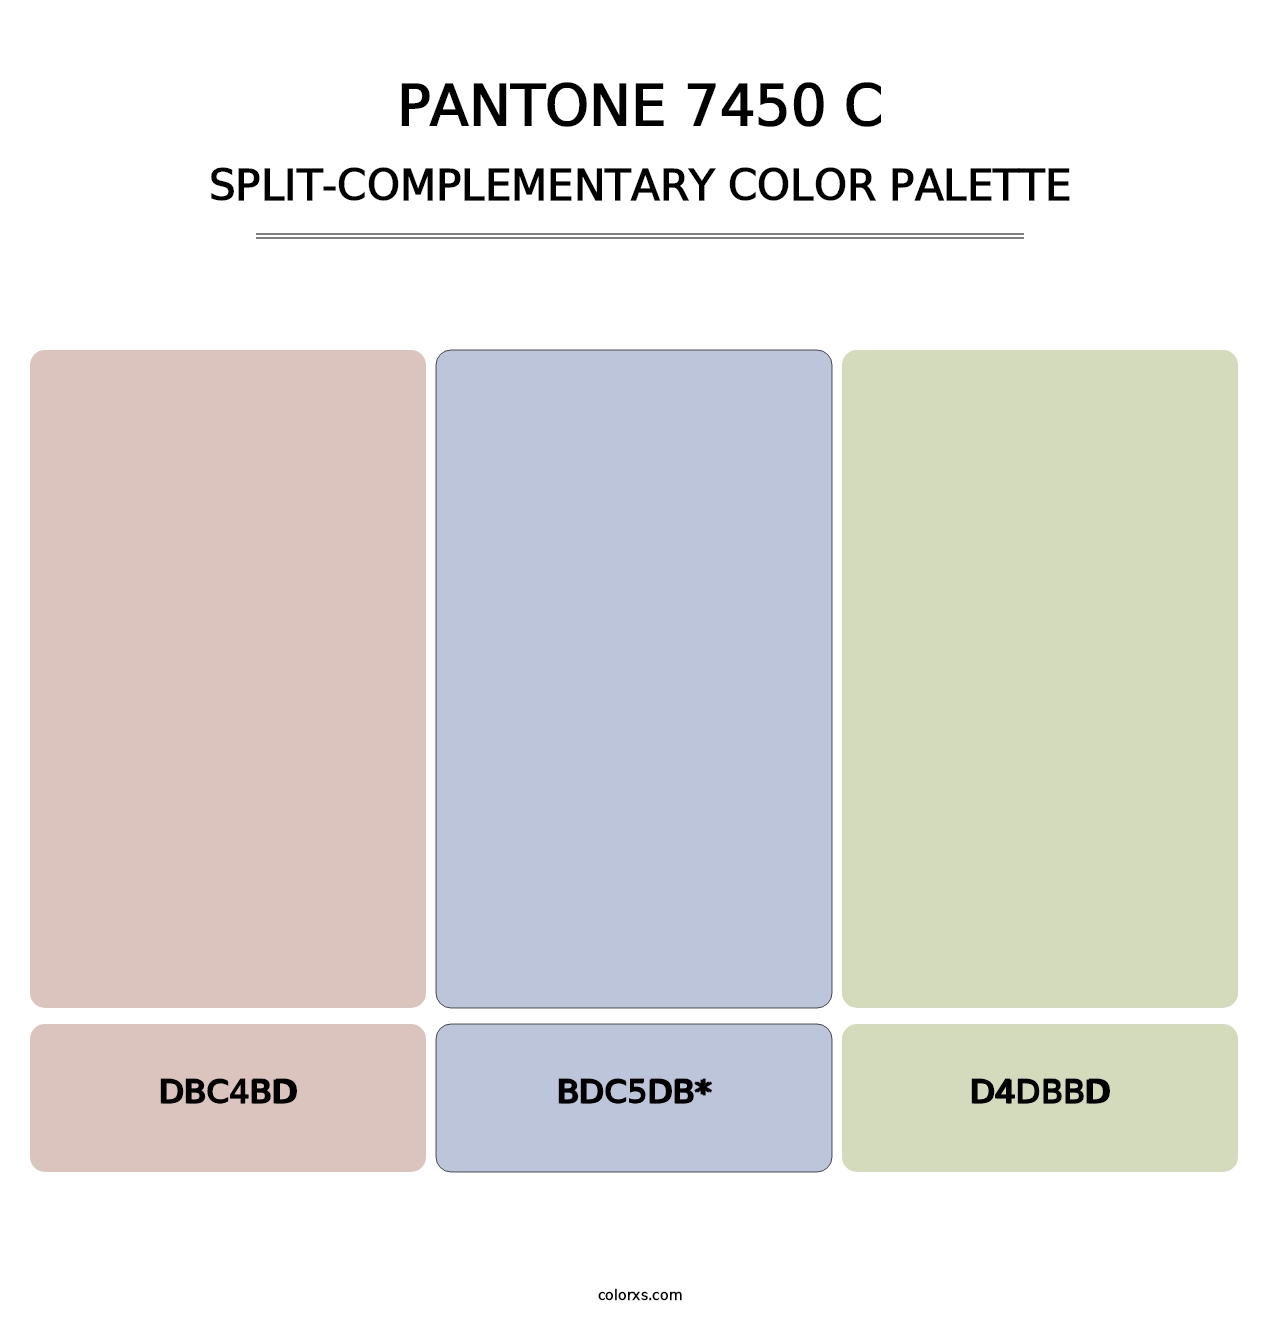 PANTONE 7450 C - Split-Complementary Color Palette